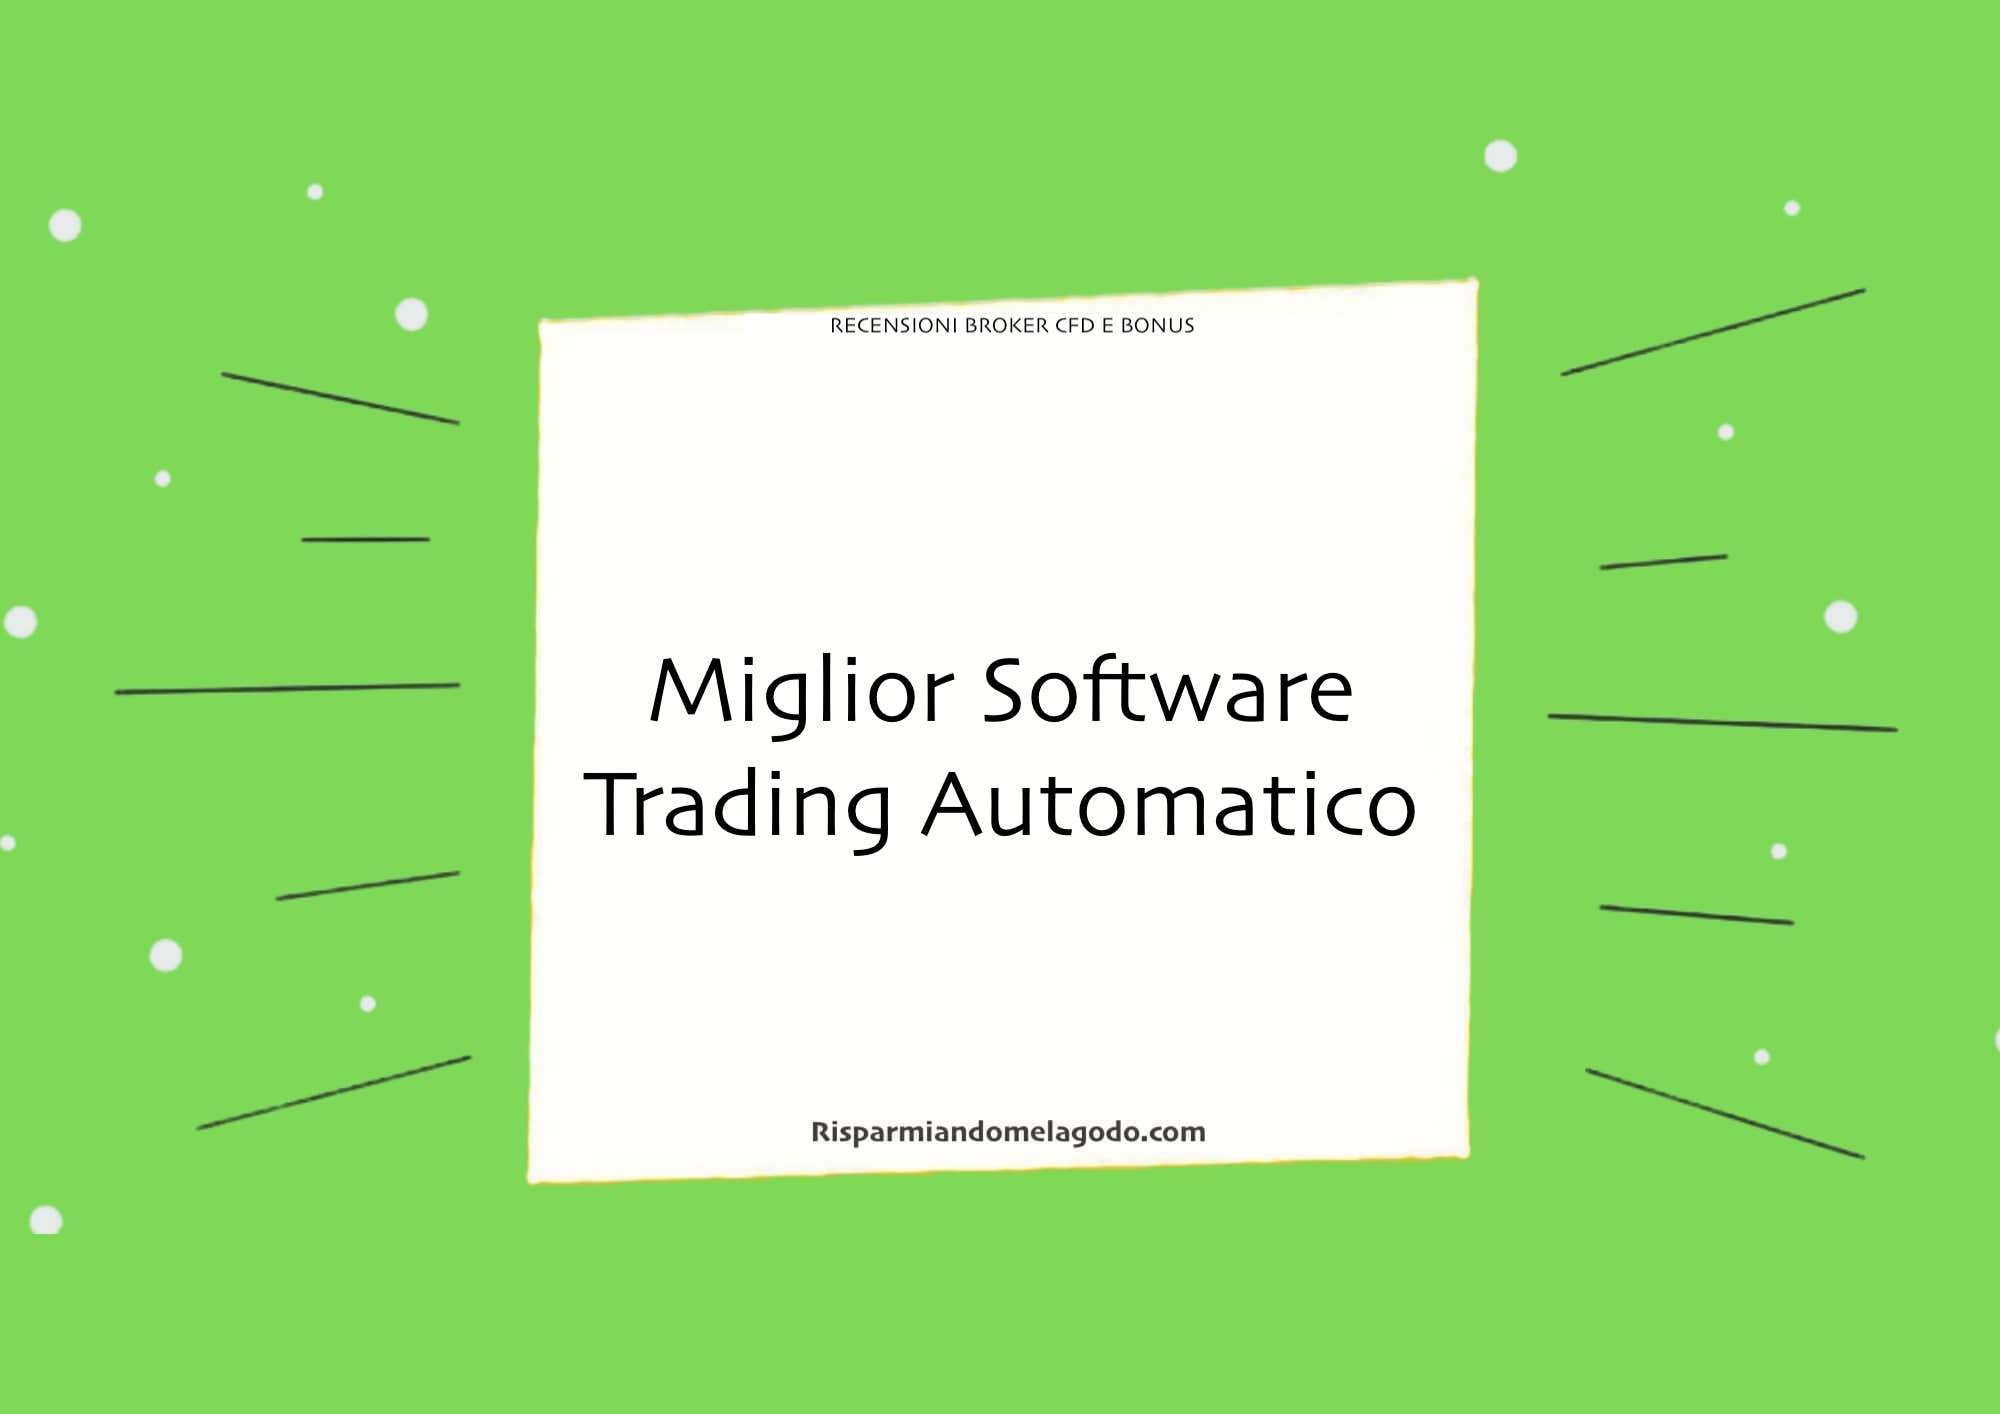 Miglior Software Trading Automatico